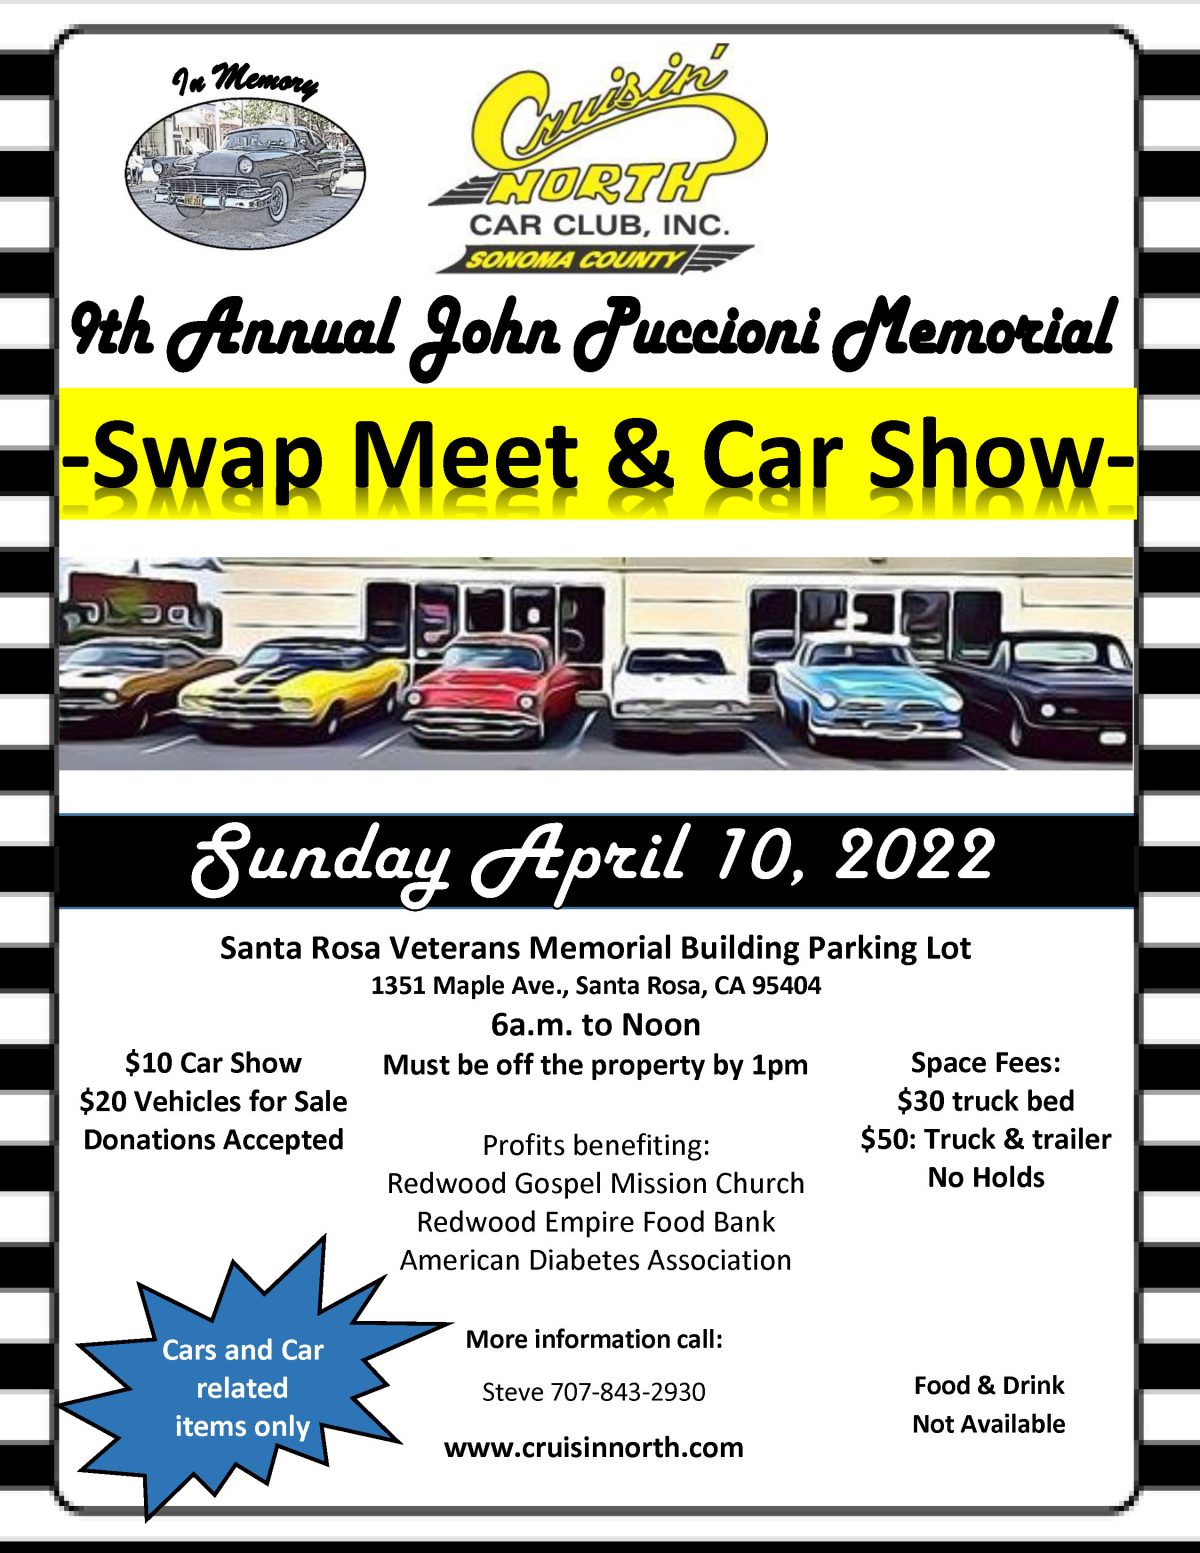 John Puccioni Swap Meet & Car Show